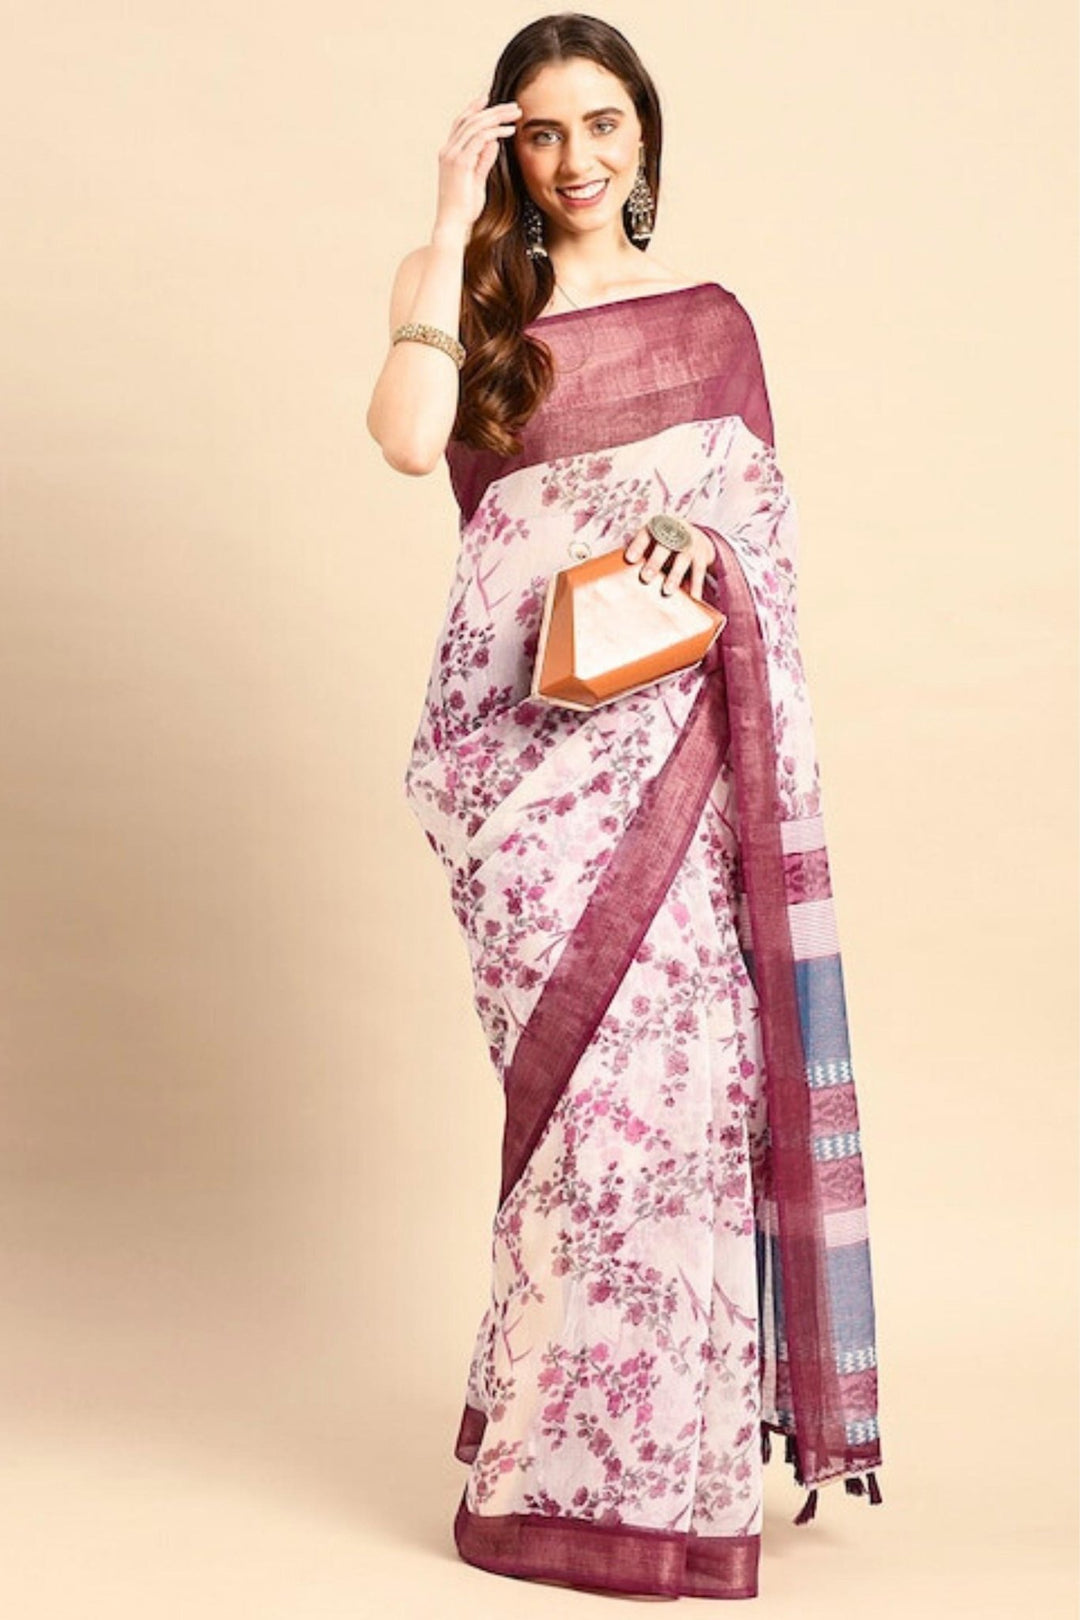 white and purple saree - white saree with purple border - purple and white combination saree - white silk saree with purple border